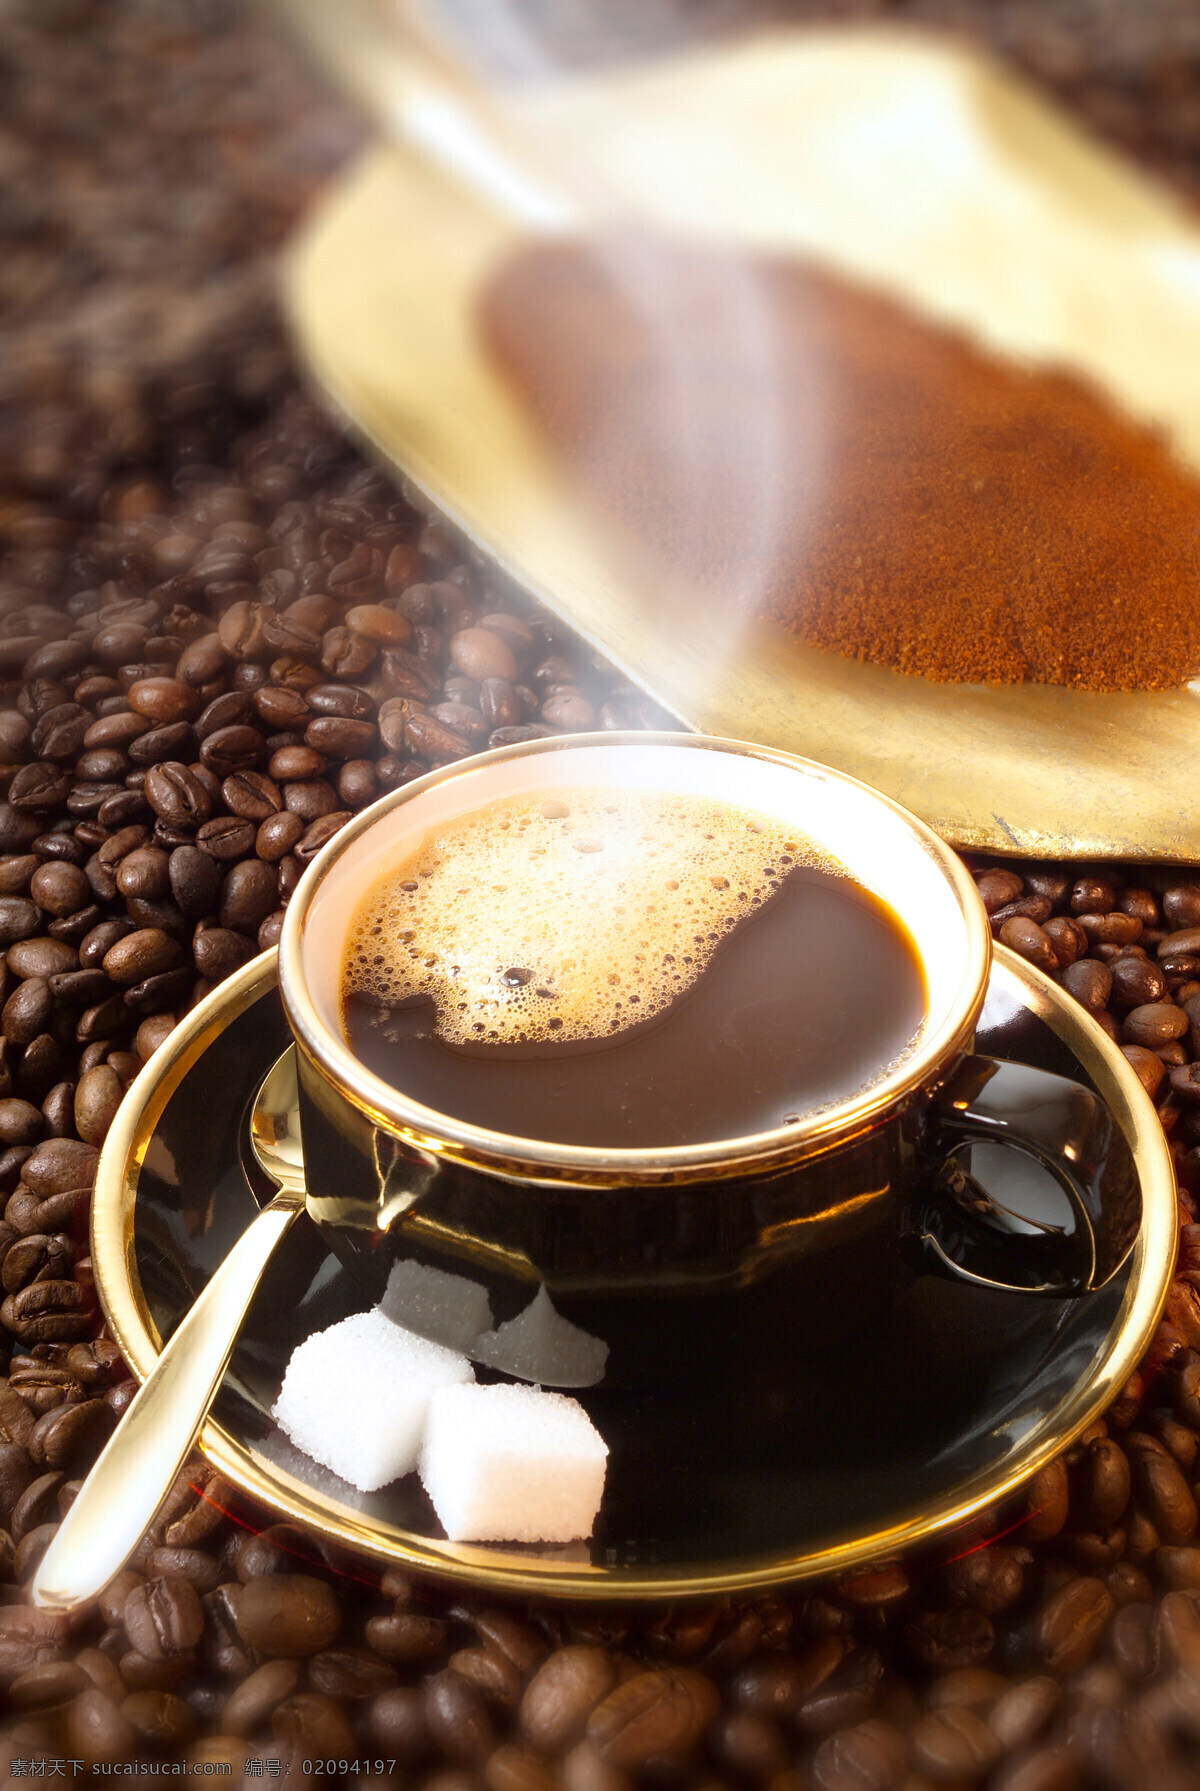 咖啡豆 上 一杯 热 咖啡 coffee 原料 掀 咖啡渣 碎渣 咖啡杯 托盘 一杯咖啡 冲咖啡 热咖啡 糖块 勺子 高清图片 咖啡图片 餐饮美食